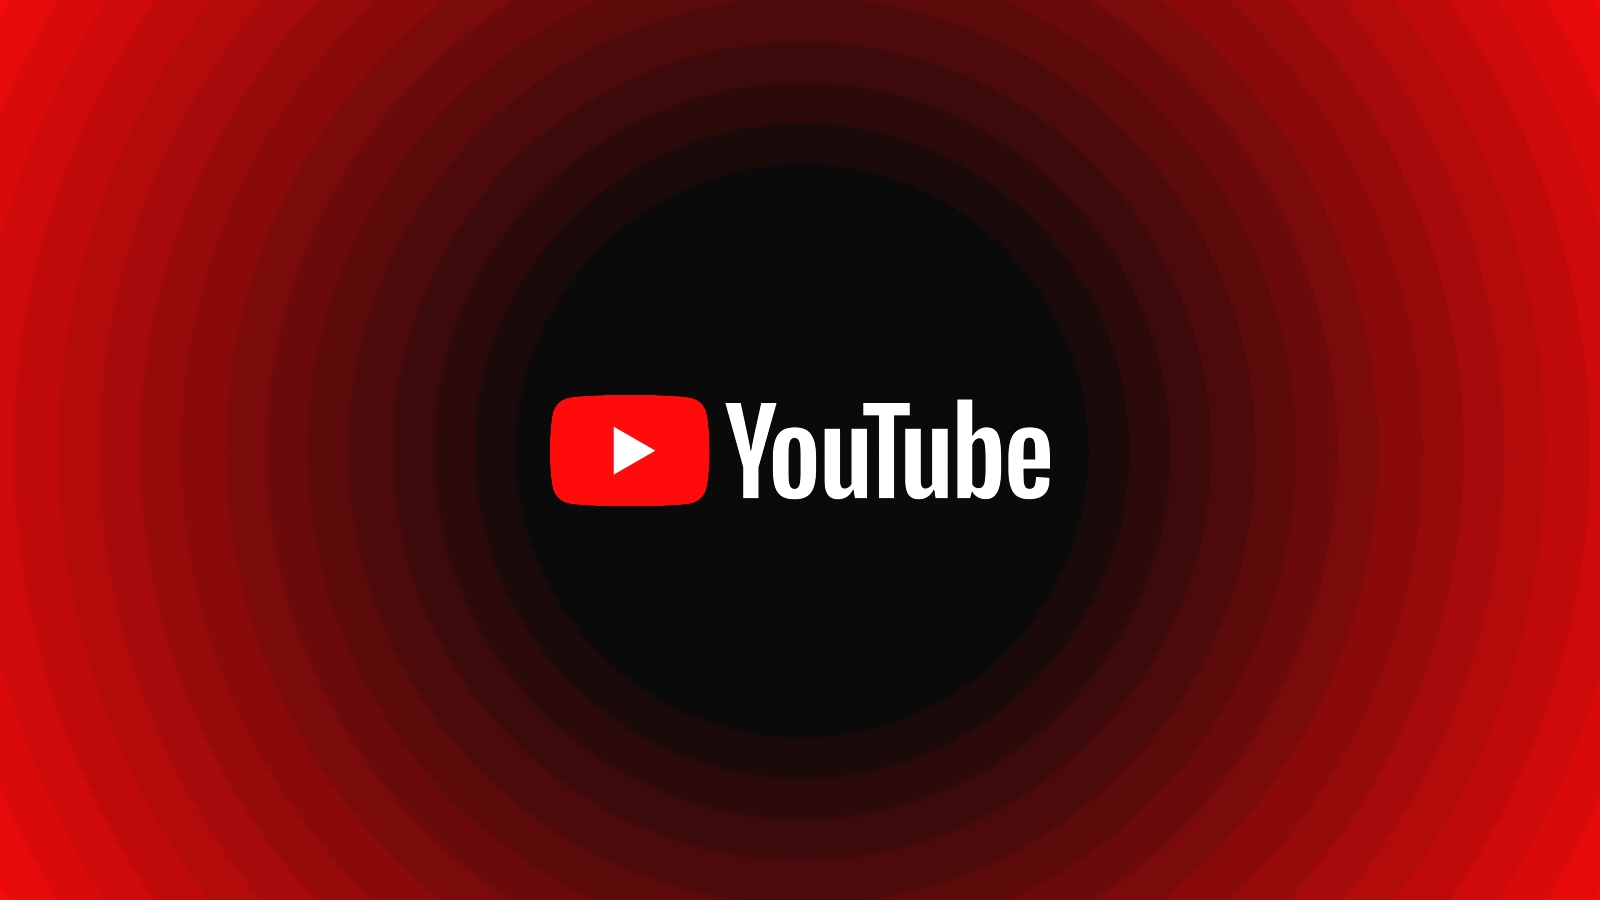 YouTube intensifica esforços contra adblocks e usuários buscam alternativas, mas sem sucesso